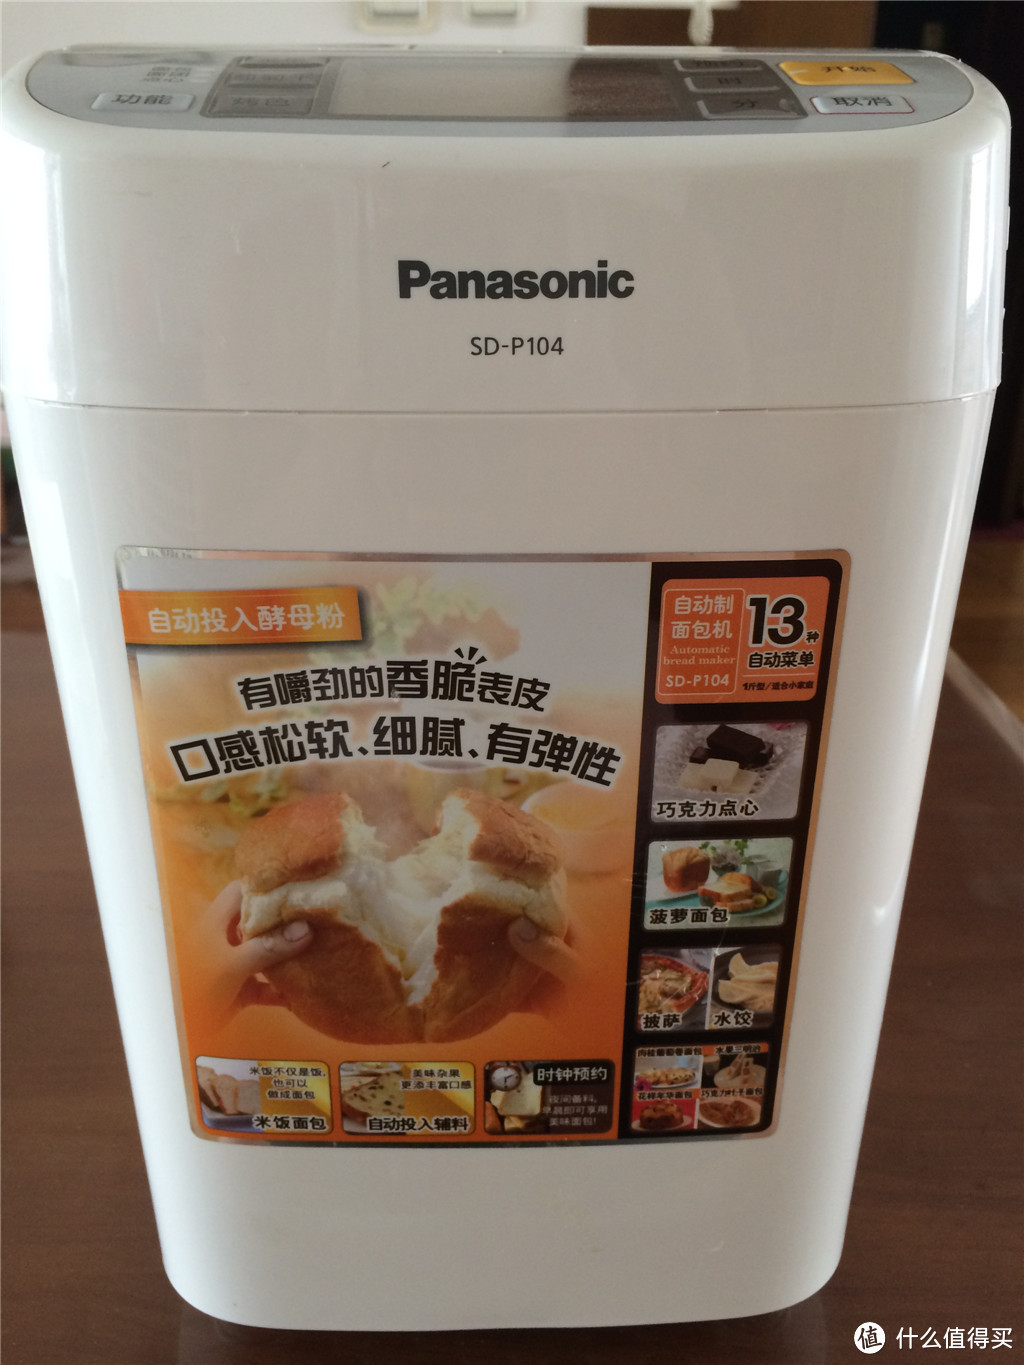 傻瓜式面包机—Panasonic 松下 SD-P104，顺便晒晒关东光面包刀